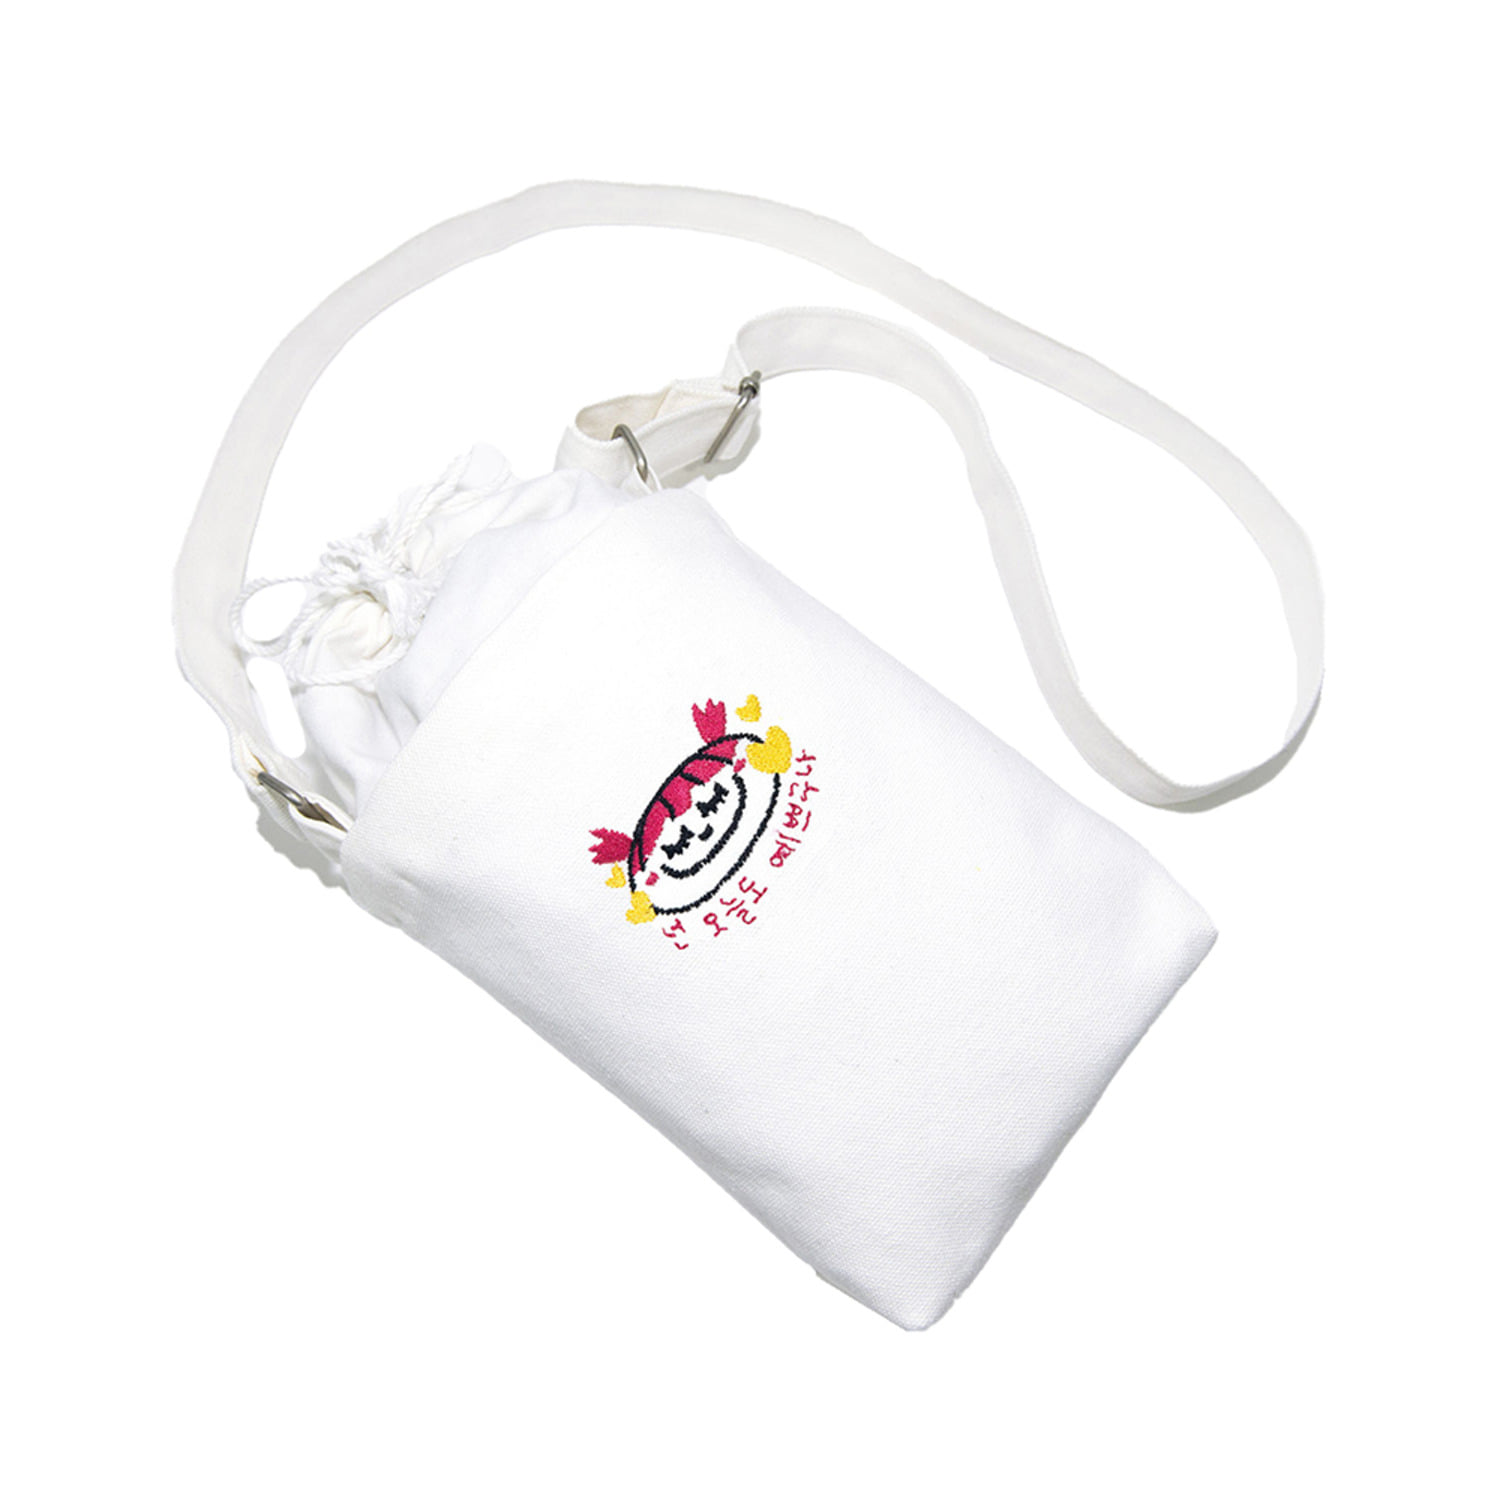 소녀 스몰 캔버스 숄더백 아이보리Girl small canvas shoulder bag (Ivory)